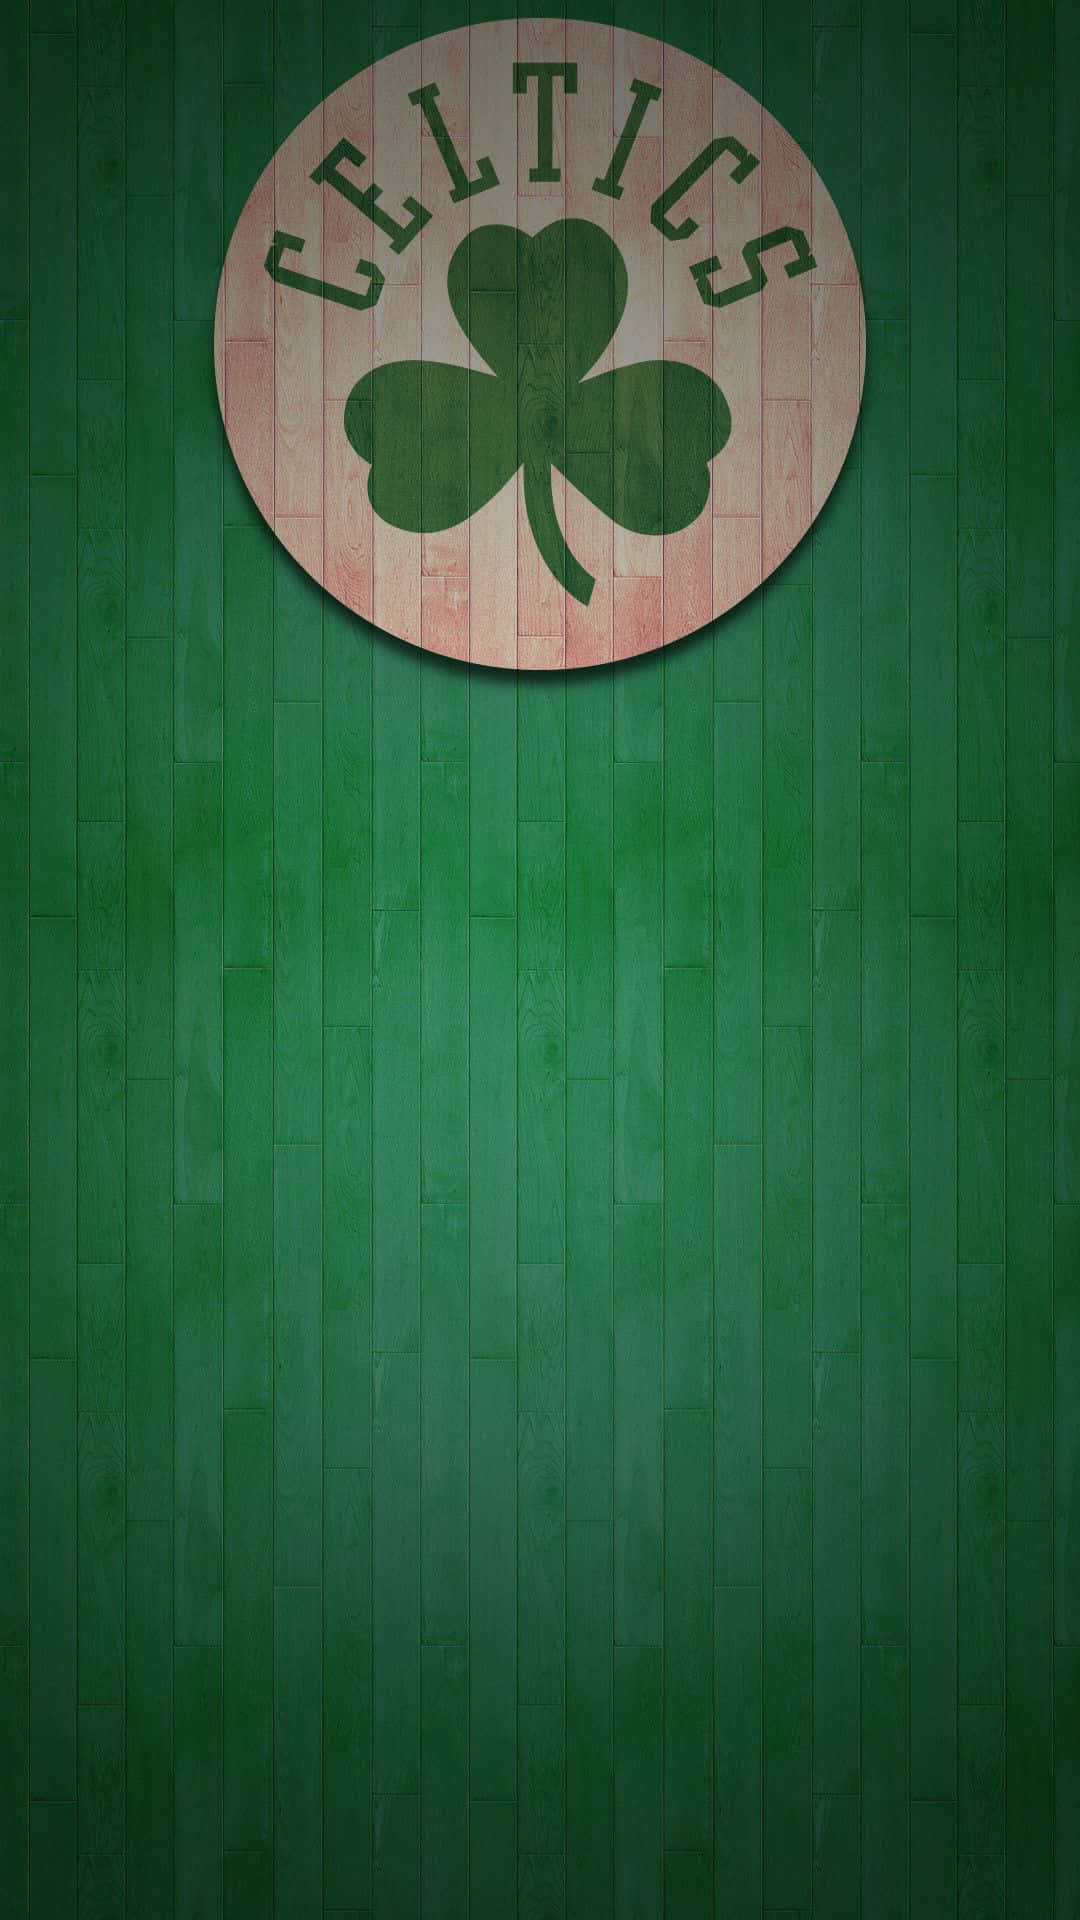 Celticsgrønne Og Hvide Striber Repræsenterer Enhed Og Historie.